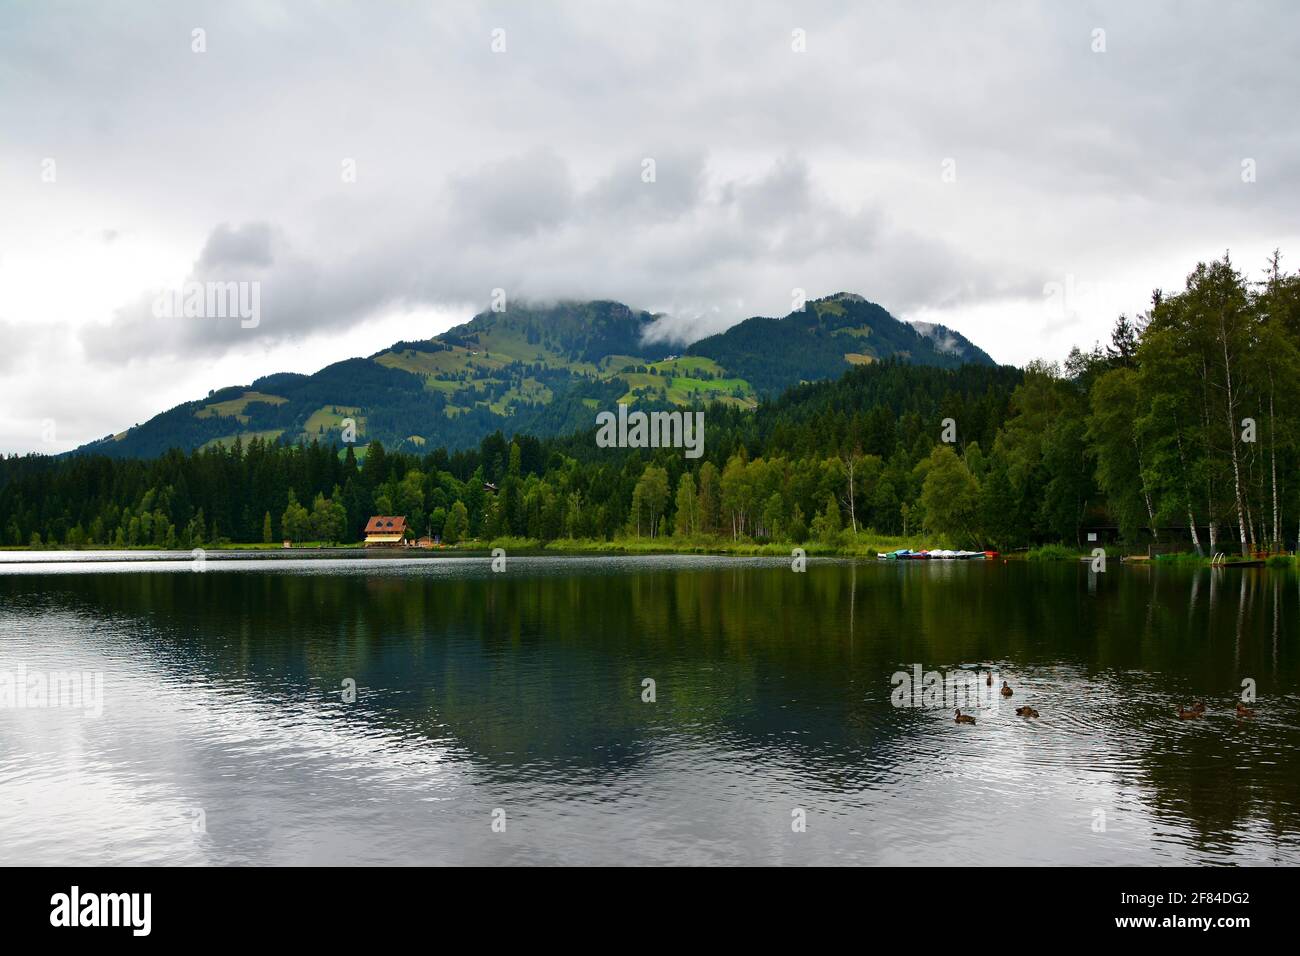 Lago di Schwarzsee - Lago Nero, lago di brughiera a ovest di Kitzbuhel lungo la strada Brixental nel cuore delle Alpi Kitzbuhel, Tirolo, Austria Foto Stock